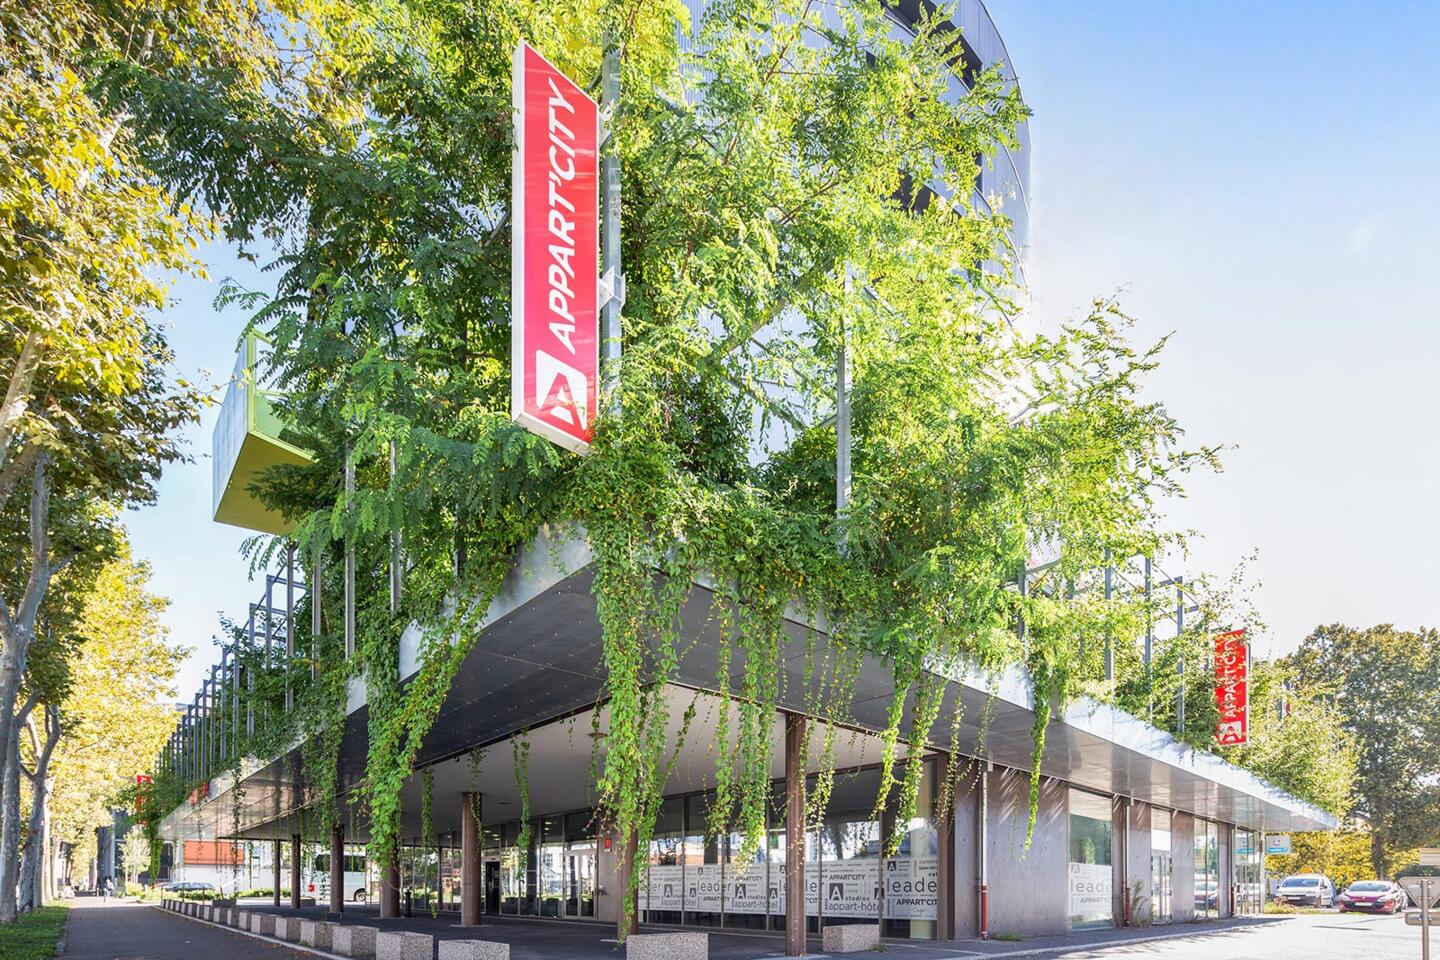 Façade extérieure de l'Appart'City avec enseignes verticales rouges, situé dans une rue bordée d'arbres, illustrant un appart'hôtel écoresponsable moderne en milieu urbain.